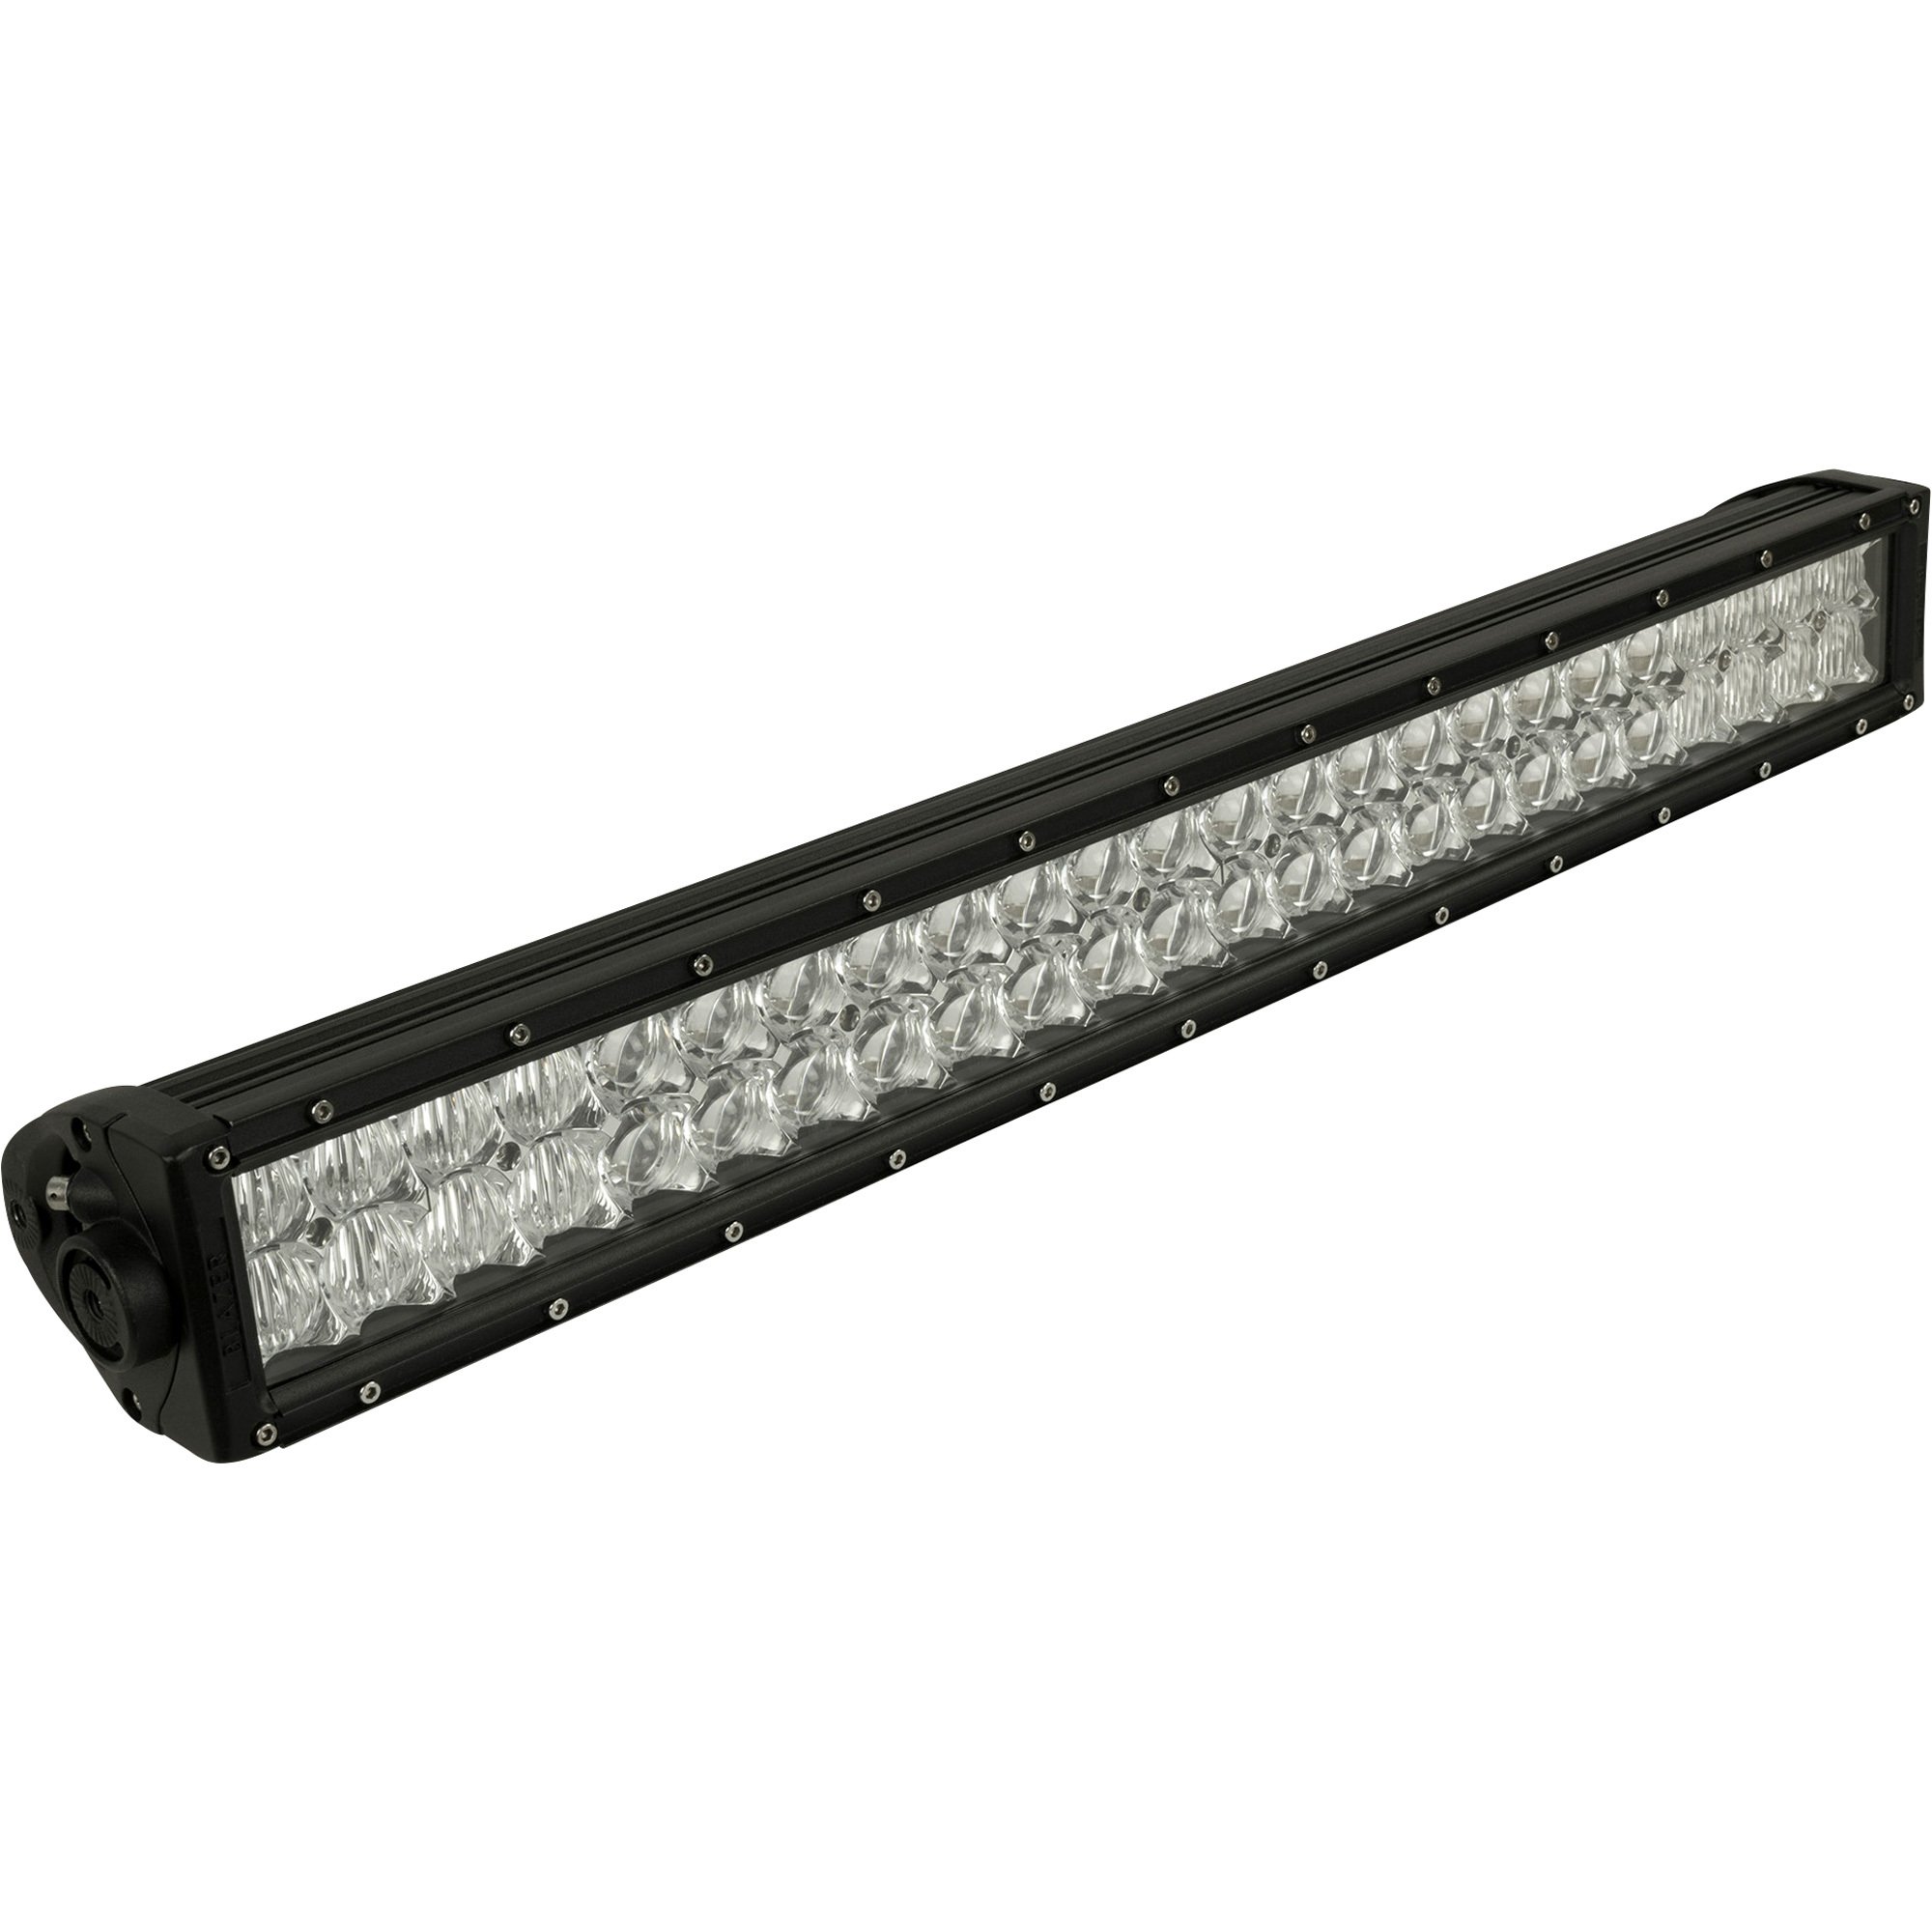 Blazer 12V/24V LED Light Bar — 24in., 8369 Lumens, 48 LEDs, Model# CWL524D